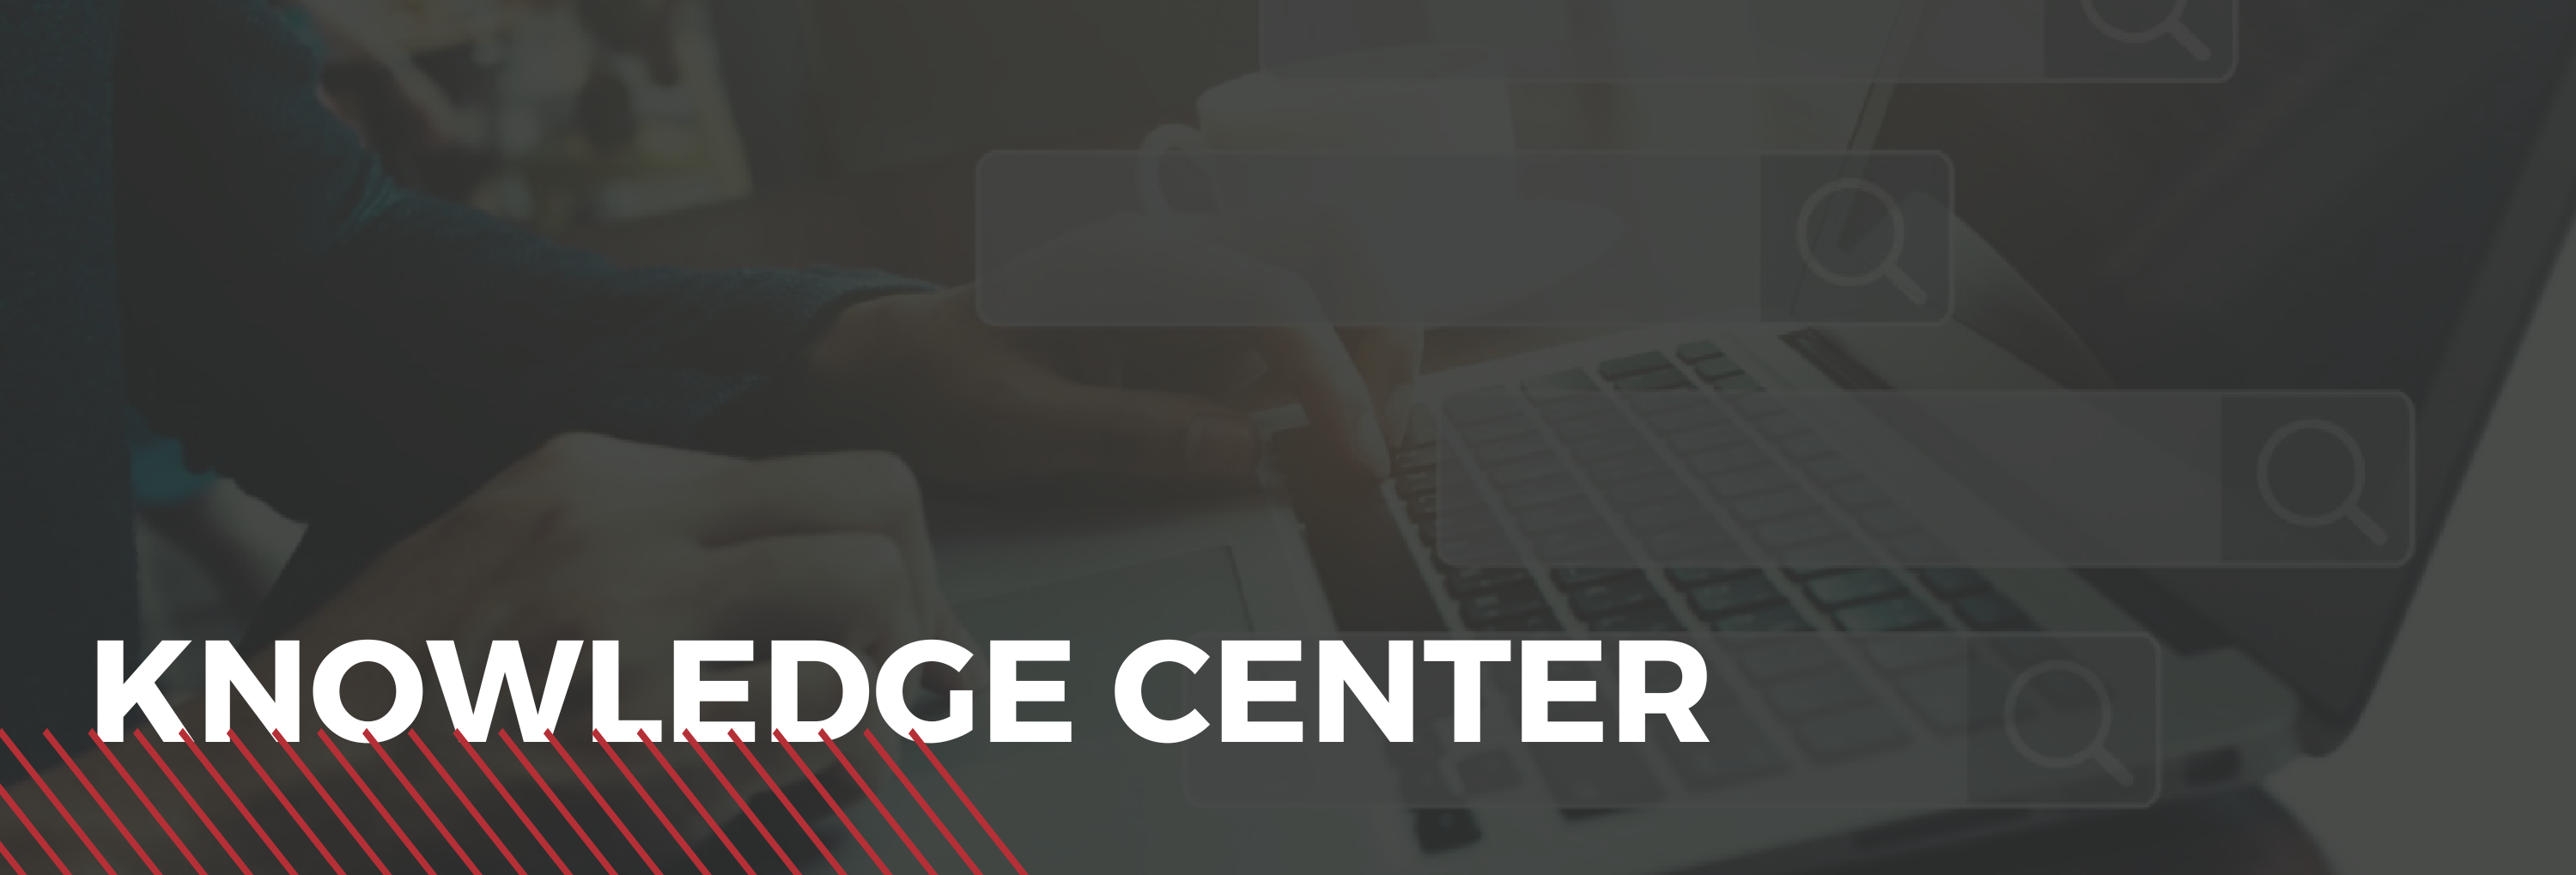 knowledege center header new